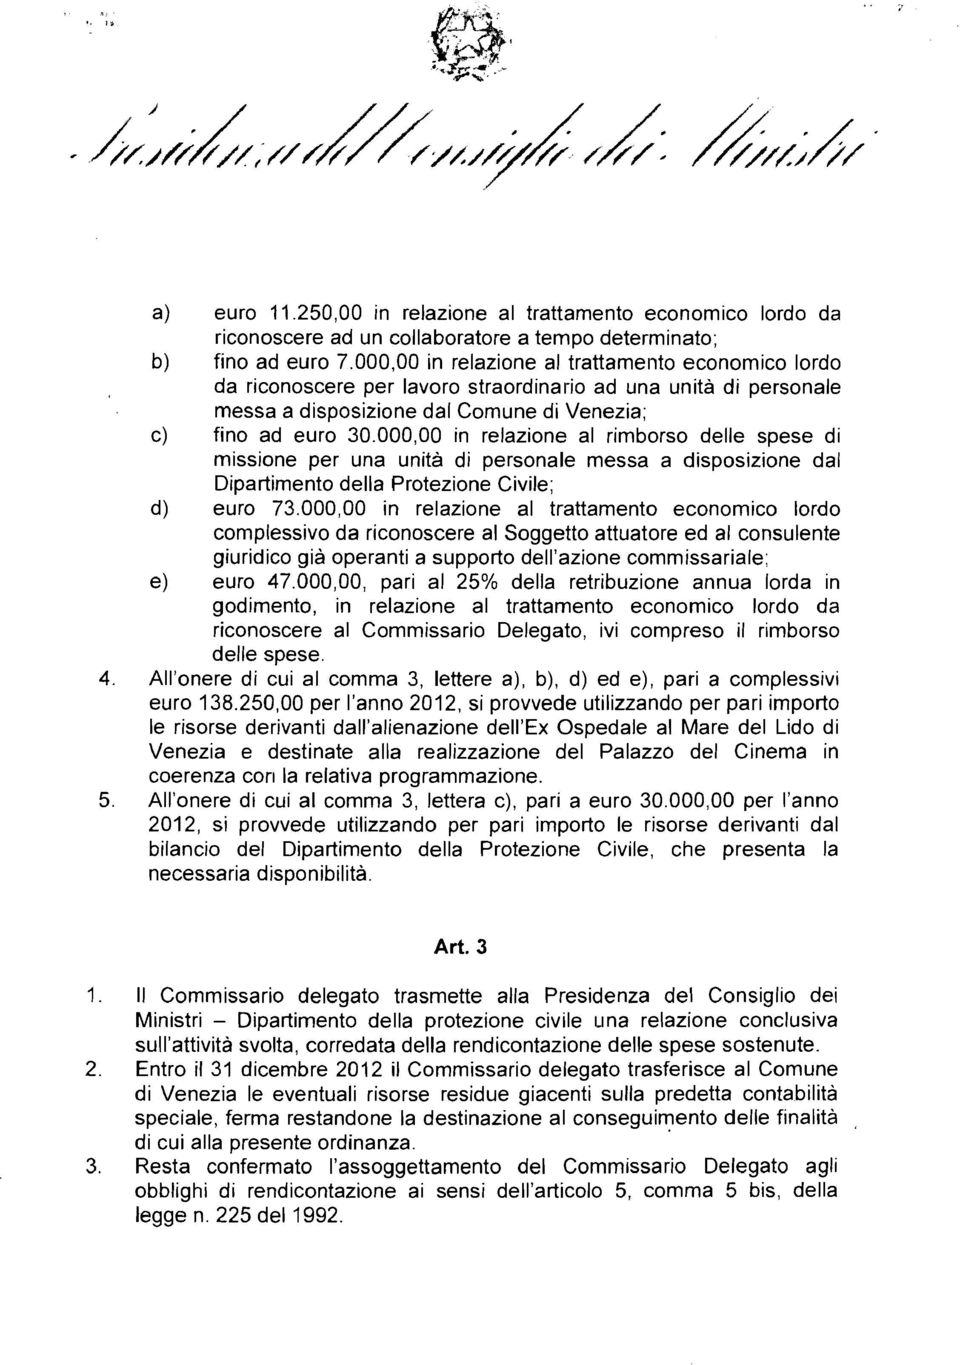 000,00 in relazione al rimborso delle spese di missione per una unita di personale messa a disposizione dal Dipartimento della Protezione Civile; d) euro 73.